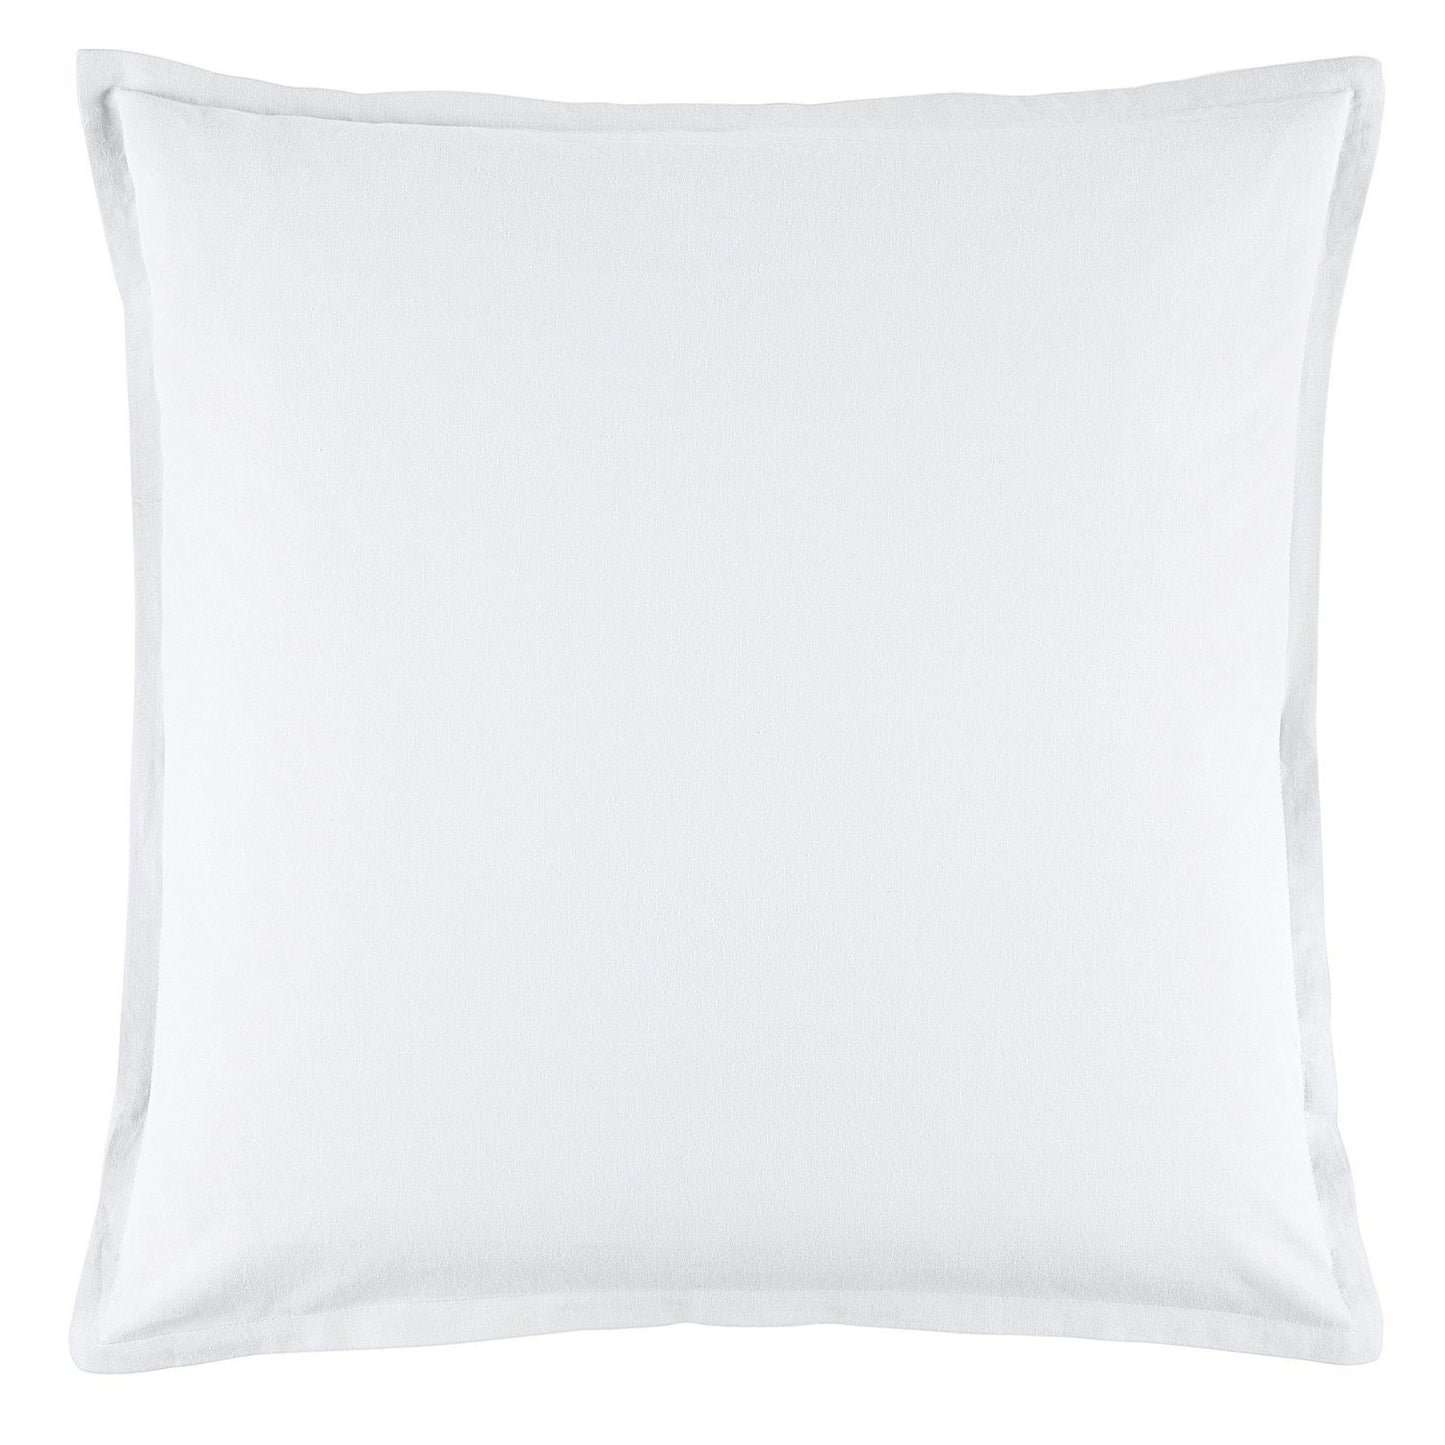 Wellington White European Pillowcase by Bianca